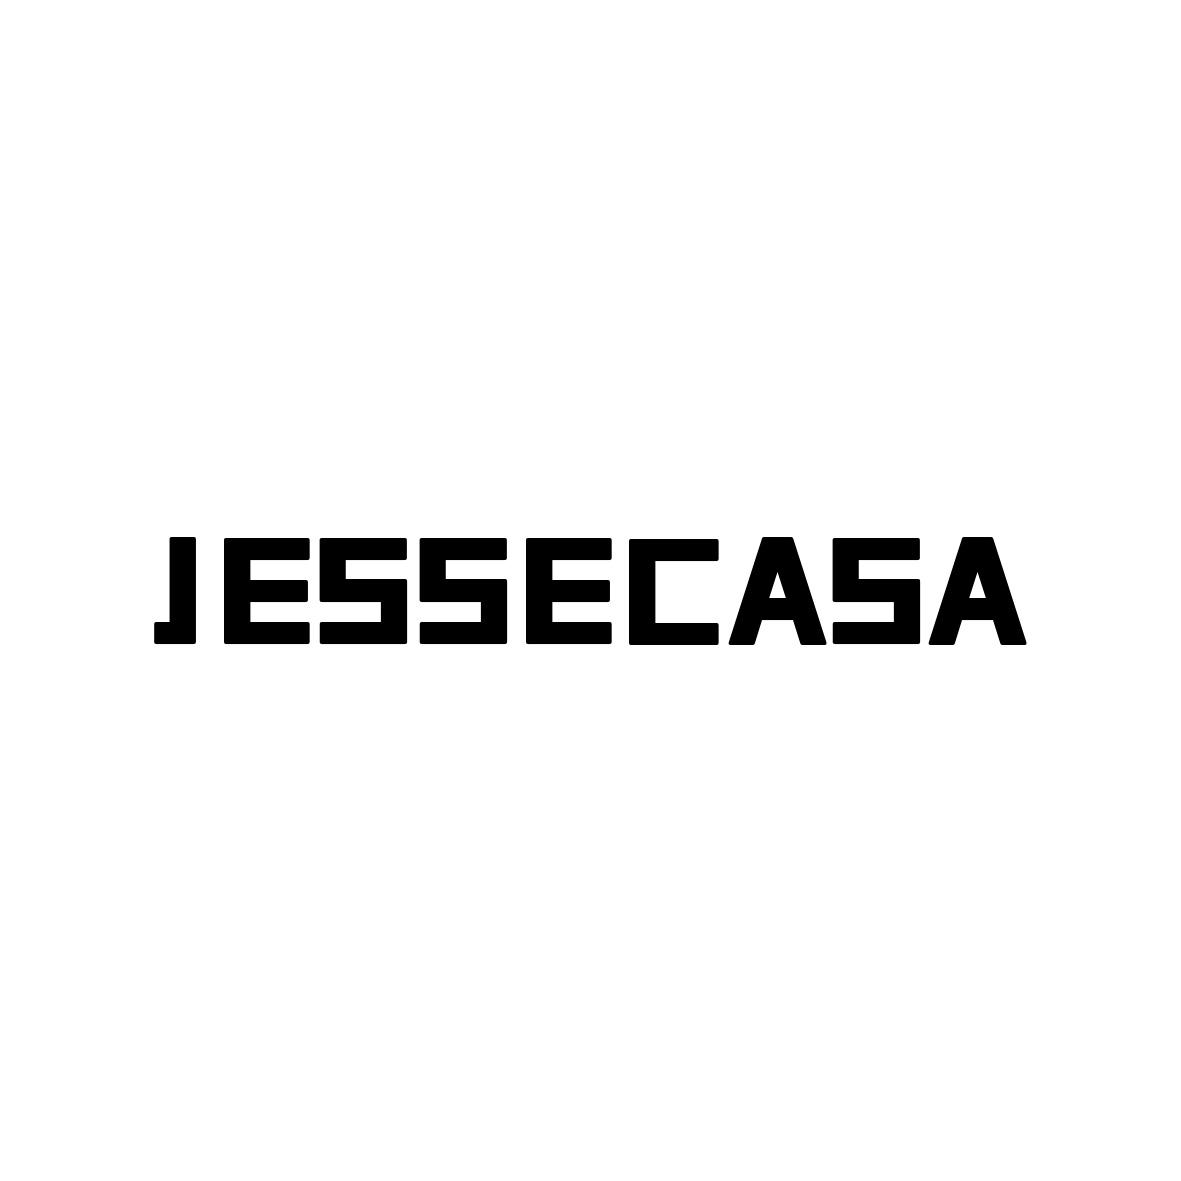 JESSECASA